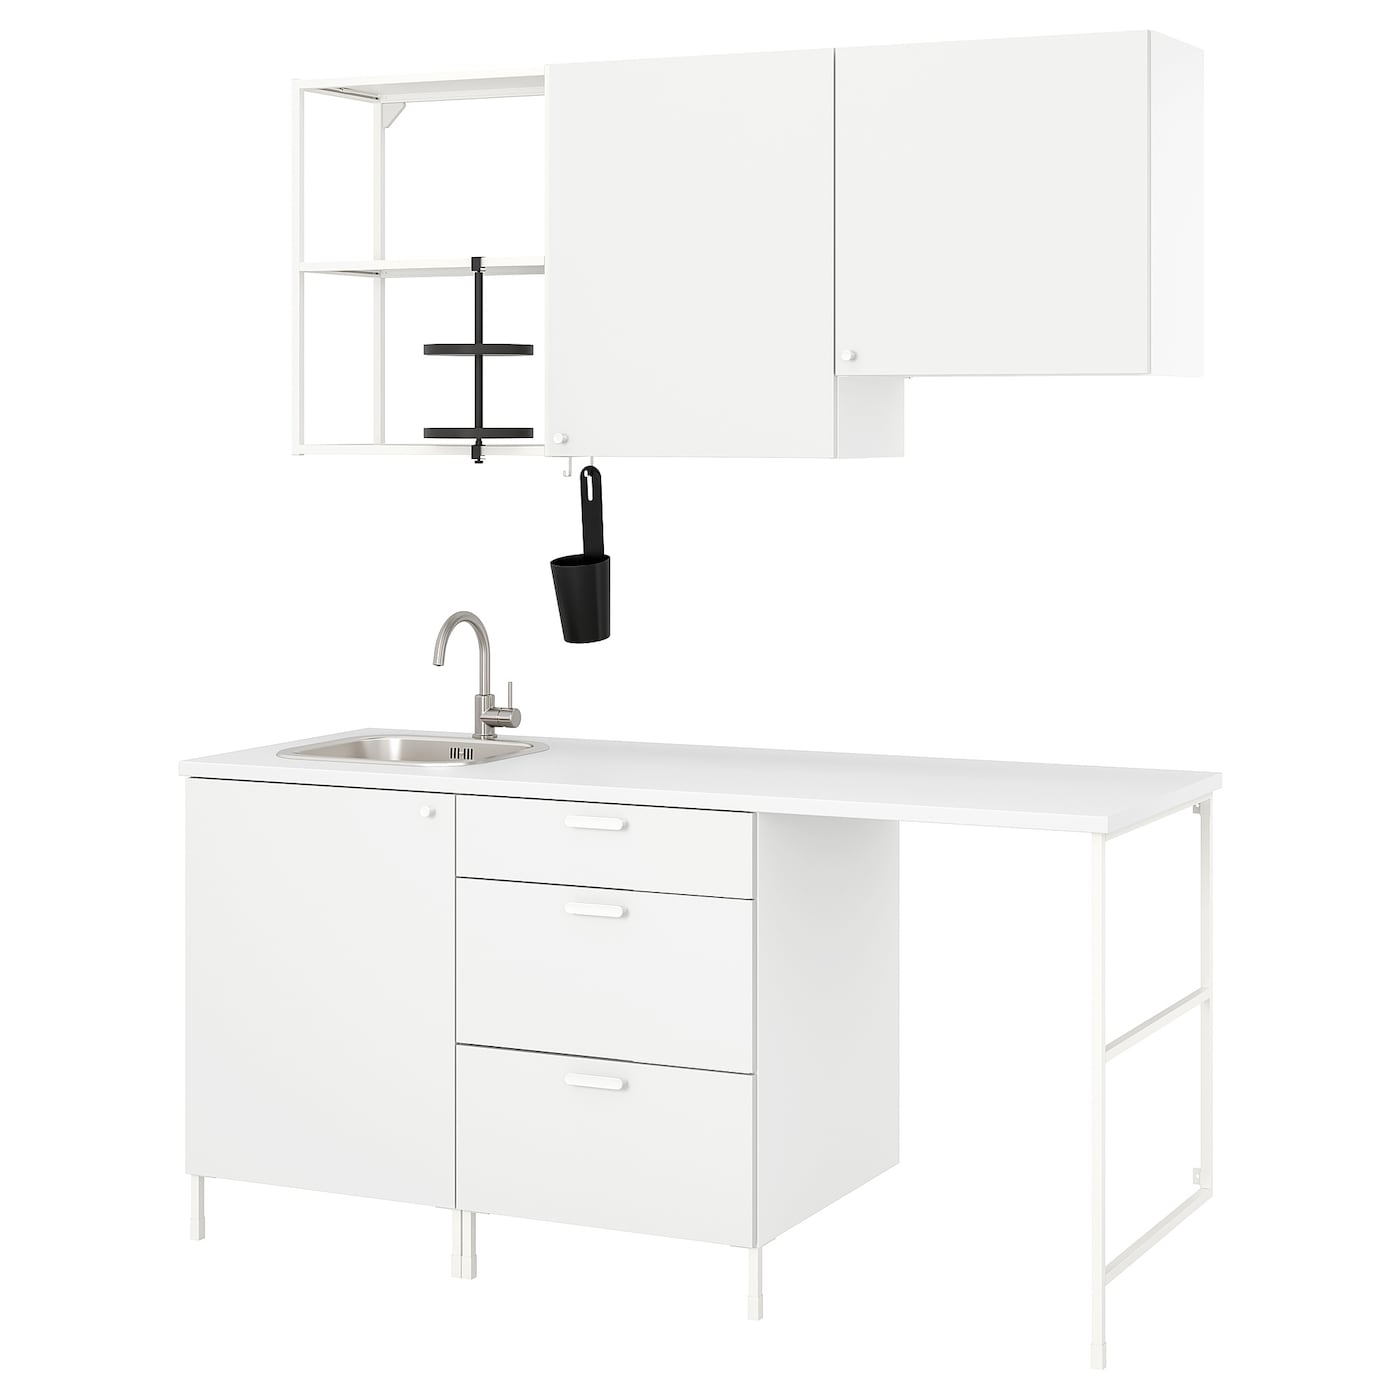 Кухня -  ENHET  IKEA/ ЭНХЕТ ИКЕА, 221,3х183  см, белый